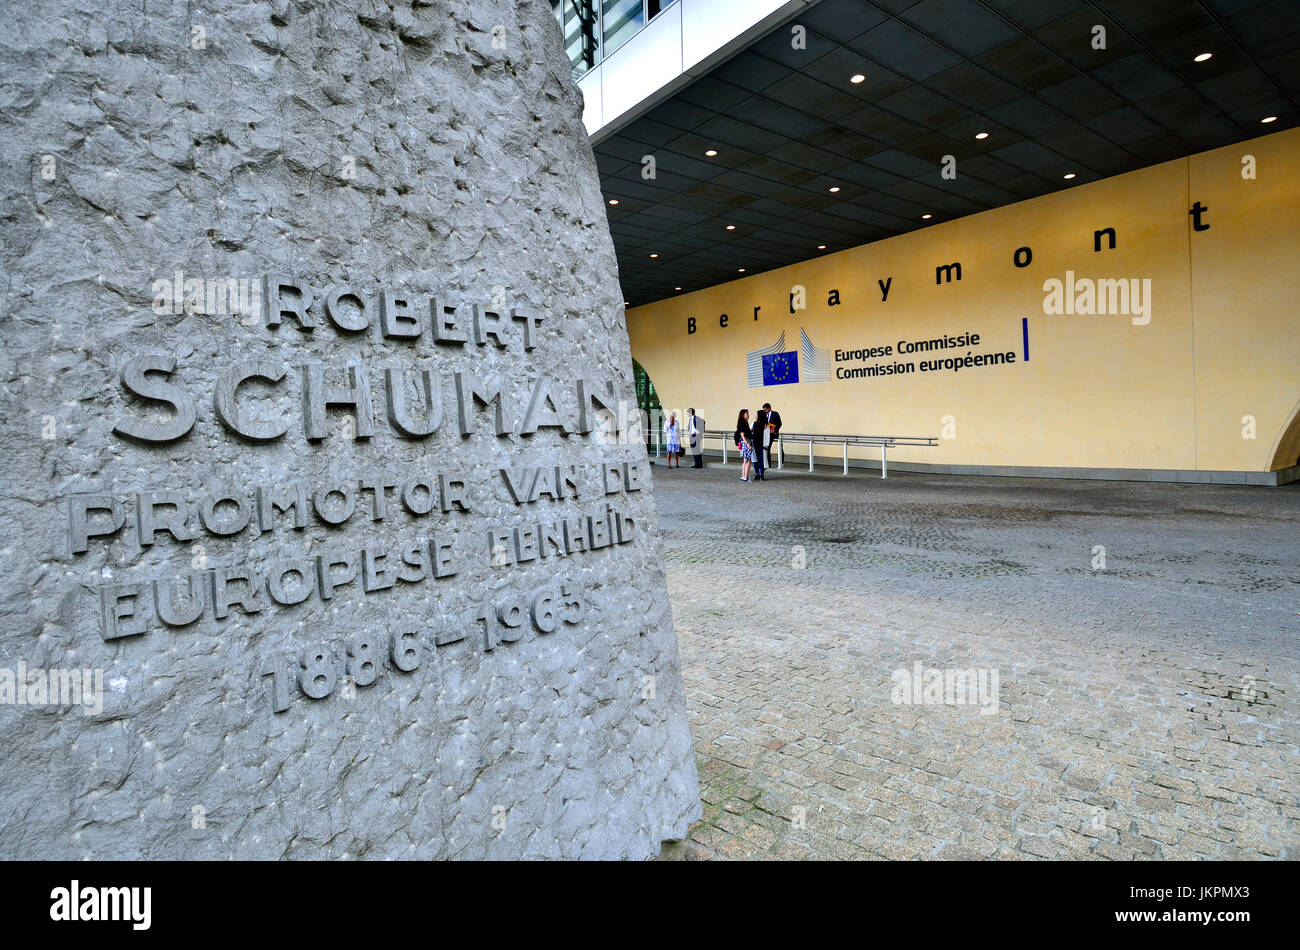 Bruselas, Bélgica. Edificio Berlaymont de la Comisión Europea. Monumento a Robert Schuman "Robert Schuman" Promotor de la Europa unificada 1886-1963' ... Foto de stock